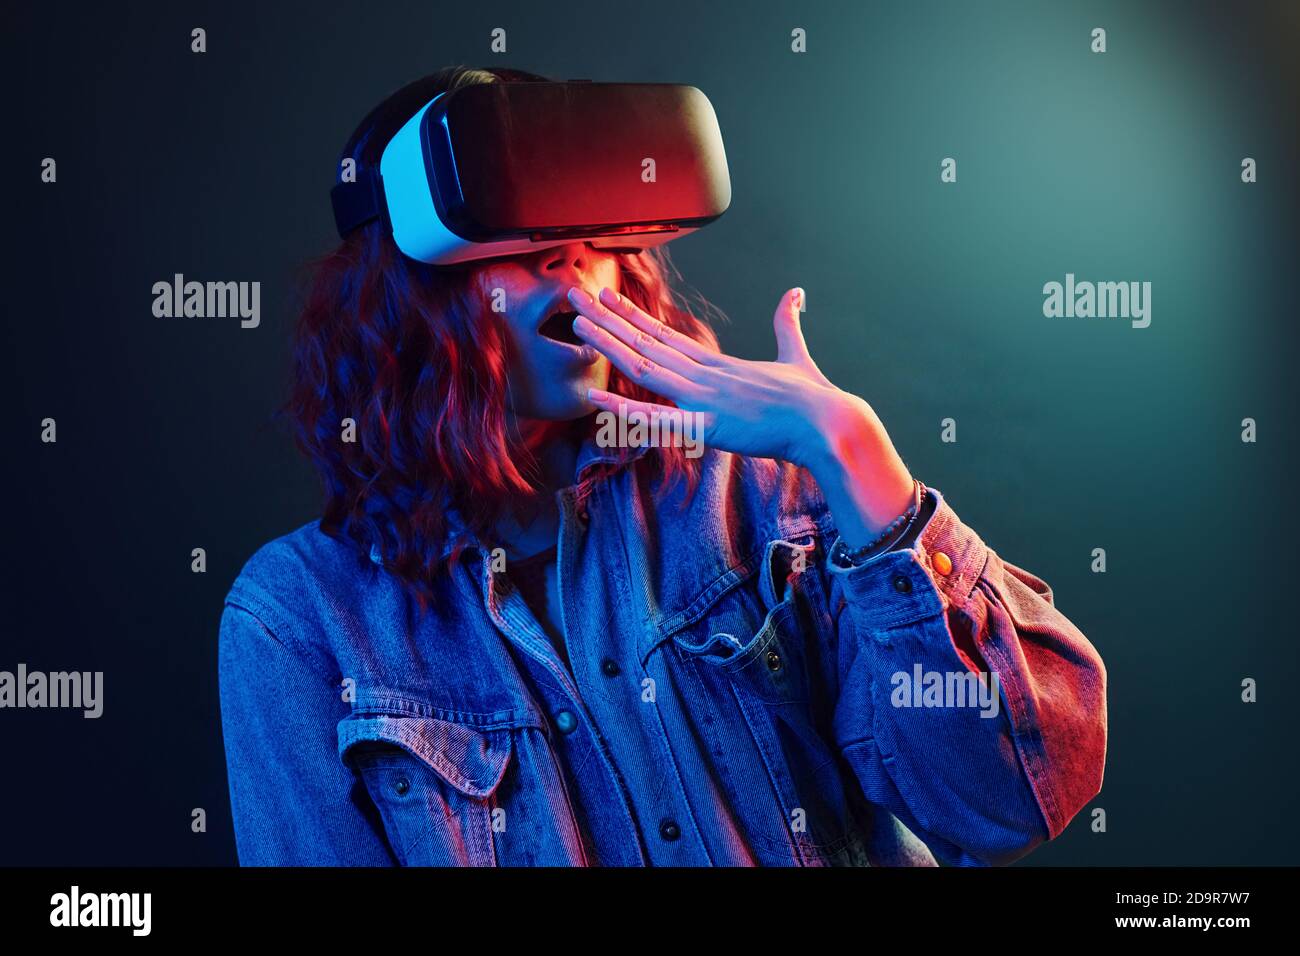 Espressione facciale di giovane ragazza con occhiali di realtà virtuale entra in un neon rosso e blu in studio Foto Stock